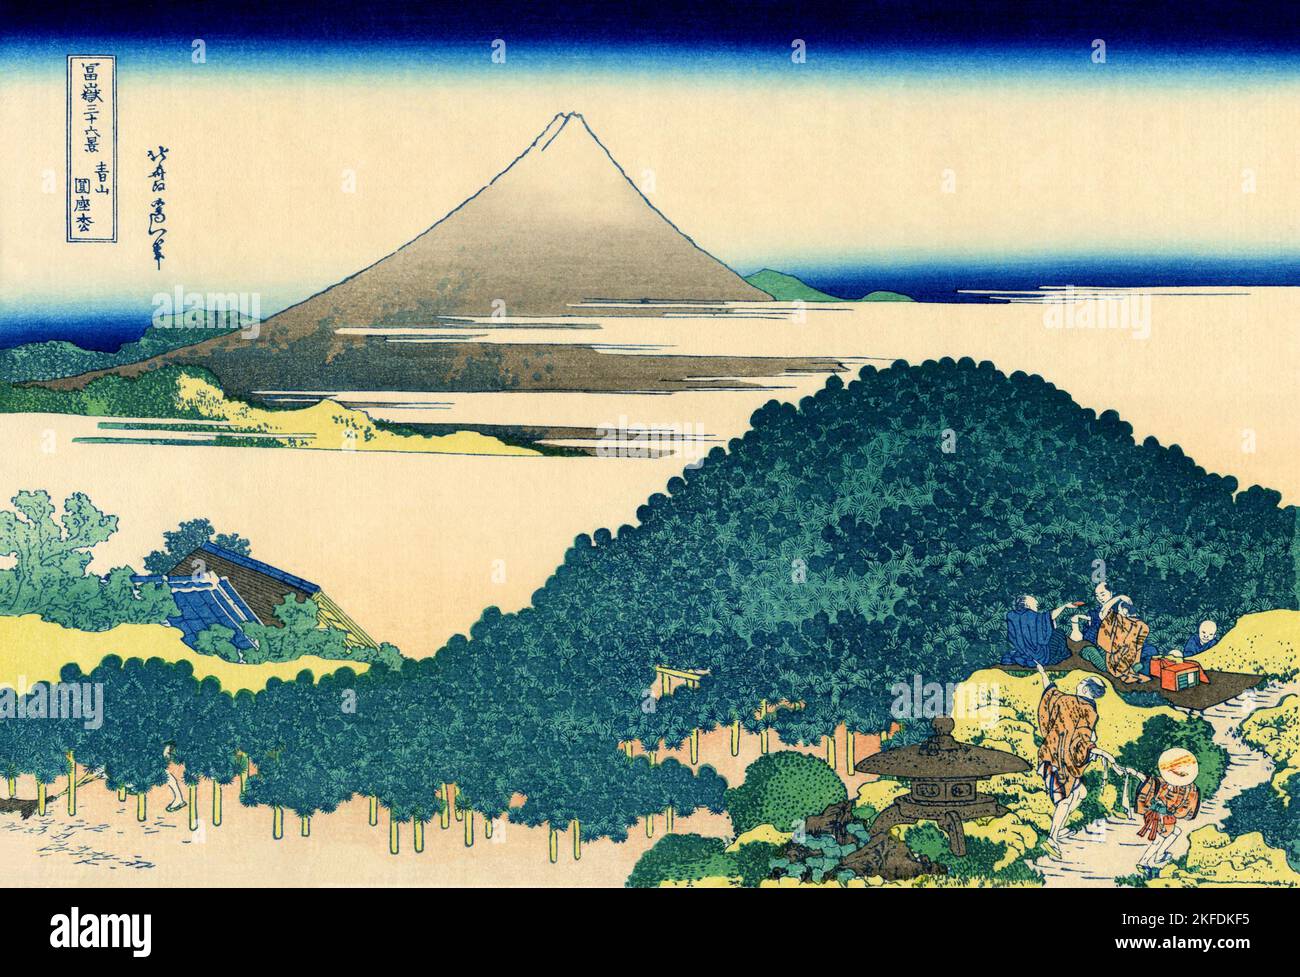 Giappone: «i pini circolari di Aoyama». Ukiyo-e stampa in blocco dalla serie 'trentasei viste del Monte Fuji' di Katsushika Hokusai (31 ottobre 1760 - 10 maggio 1849), c.. 1830. Monte Fuji è la montagna più alta del Giappone a 3,776.24 m (12,389 ft). Stratovulcano attivo che ha eruttato l'ultima volta nel 1707-08, il Monte Fuji si trova a circa 100 km a sud-ovest di Tokyo. Il cono eccezionalmente simmetrico del Monte Fuji è un simbolo e un'icona ben noti del Giappone ed è spesso raffigurato in arte e fotografie. E' una delle 'tre montagne Sacre' del Giappone insieme al Monte Tate e al Monte Haku. Foto Stock